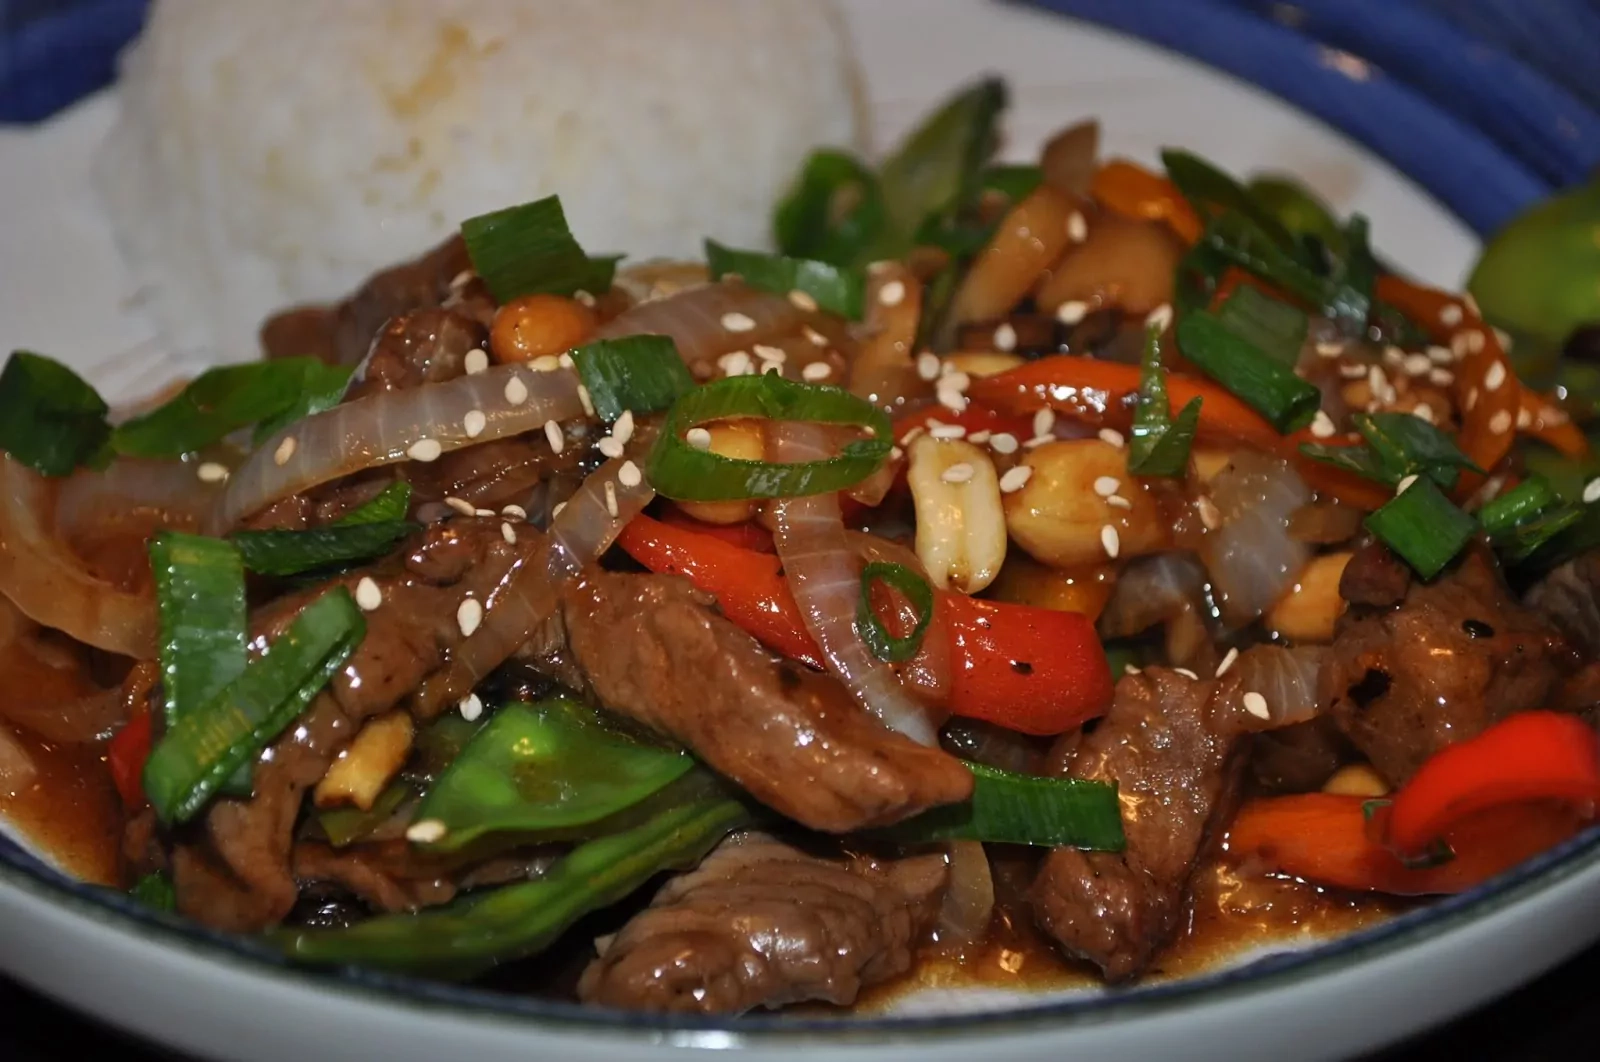 Wołowina po chińsku: stir-fry z wołowiną i warzywami oraz sosem teriyaki